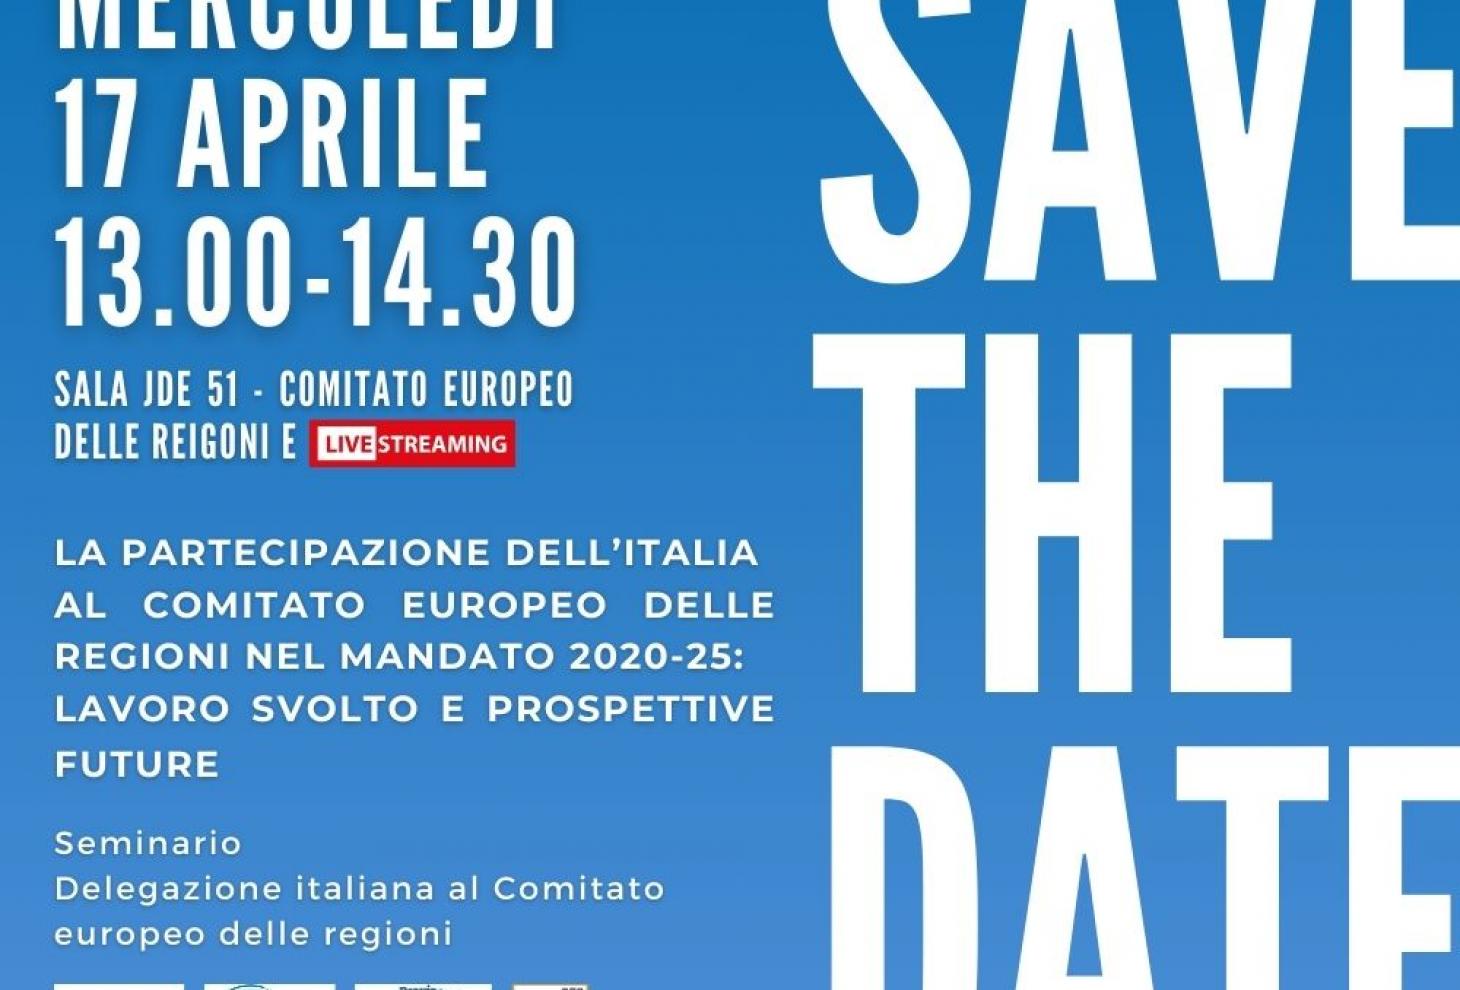 La partecipazione dell’Italia al Comitato europeo delle regioni nel mandato 2020/25